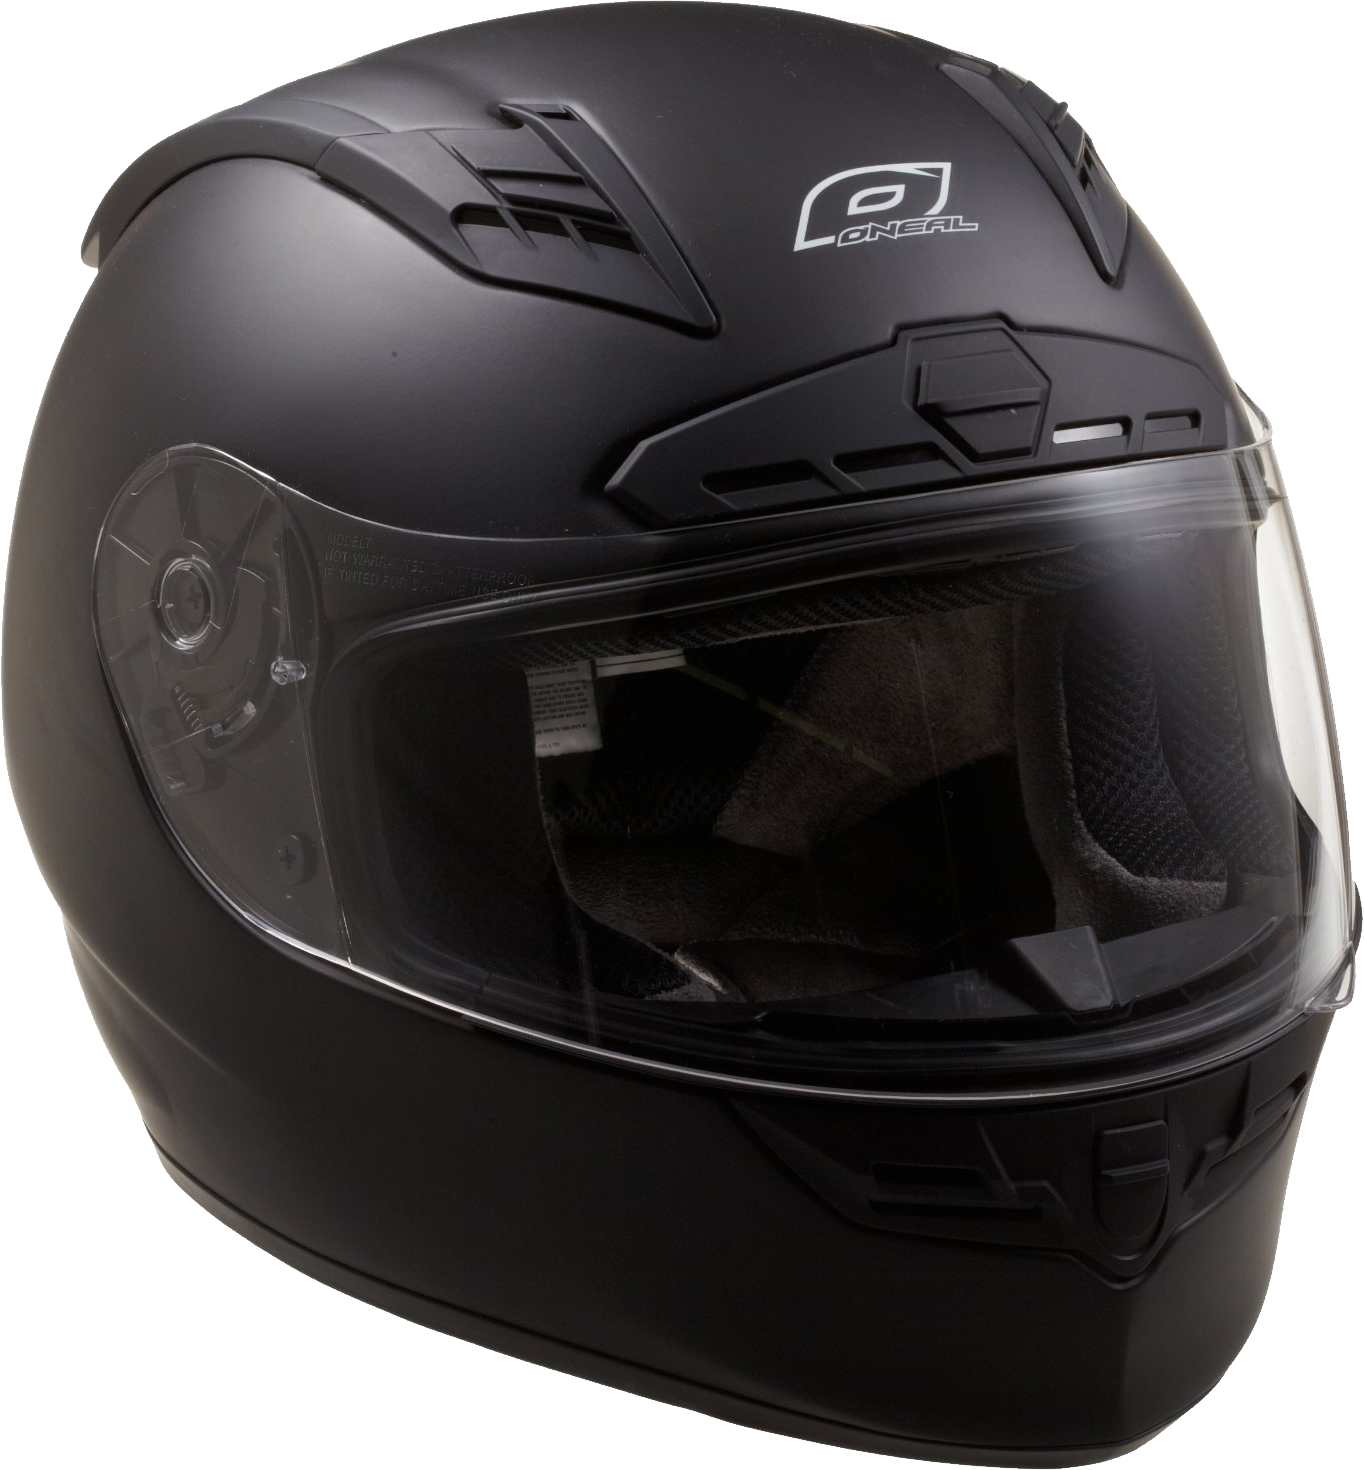 Black Motorcycle Helmet Background PNG Image